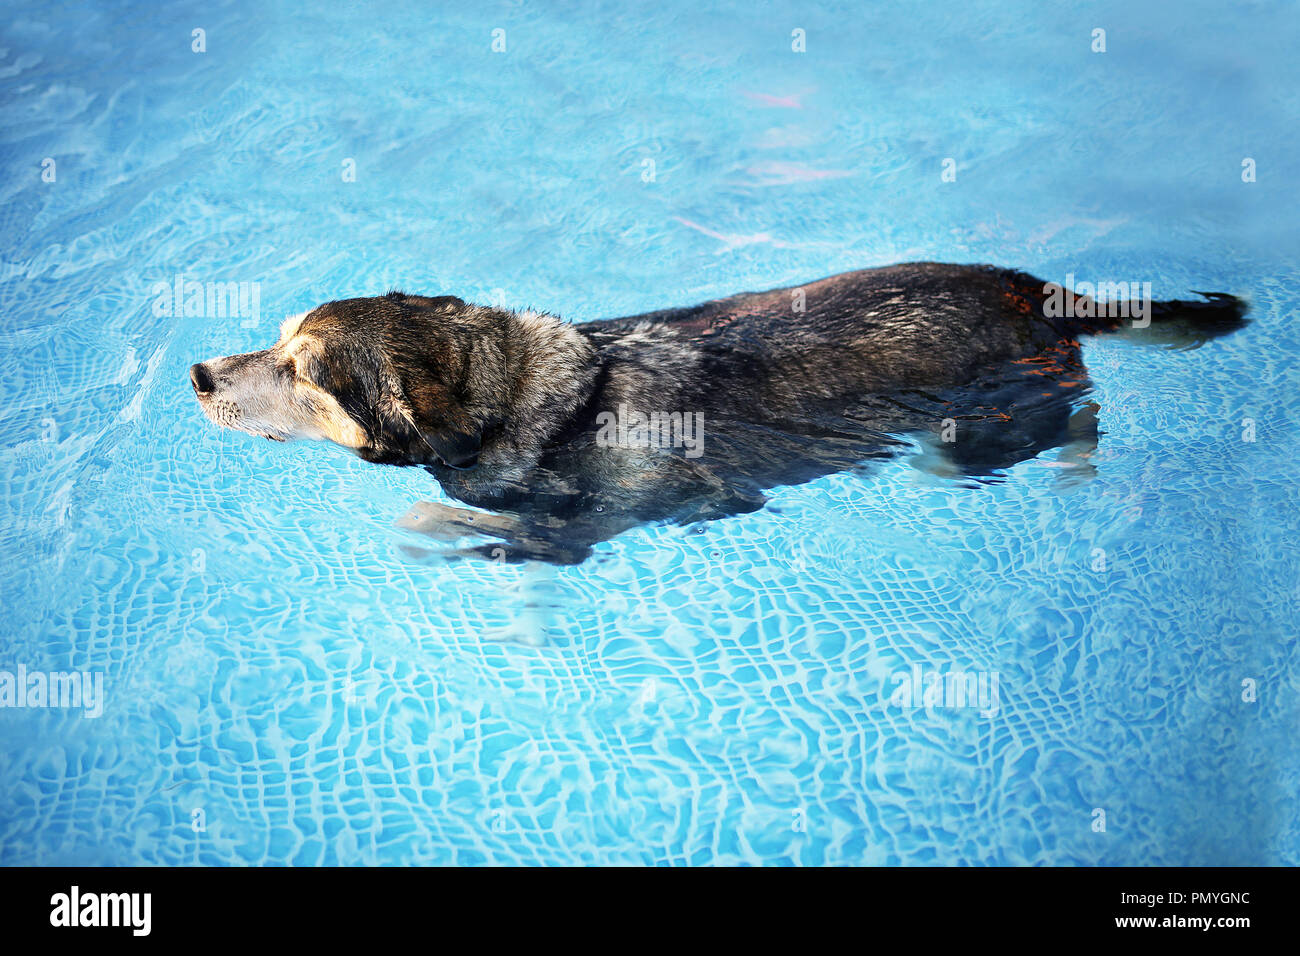 Un viejo MIX BREED perro es nadar en el agua clara de un patio con piscina para hacer ejercicio y terapia de rehabilitación después de la ruptura del LCA y lesión de rodilla Foto de stock